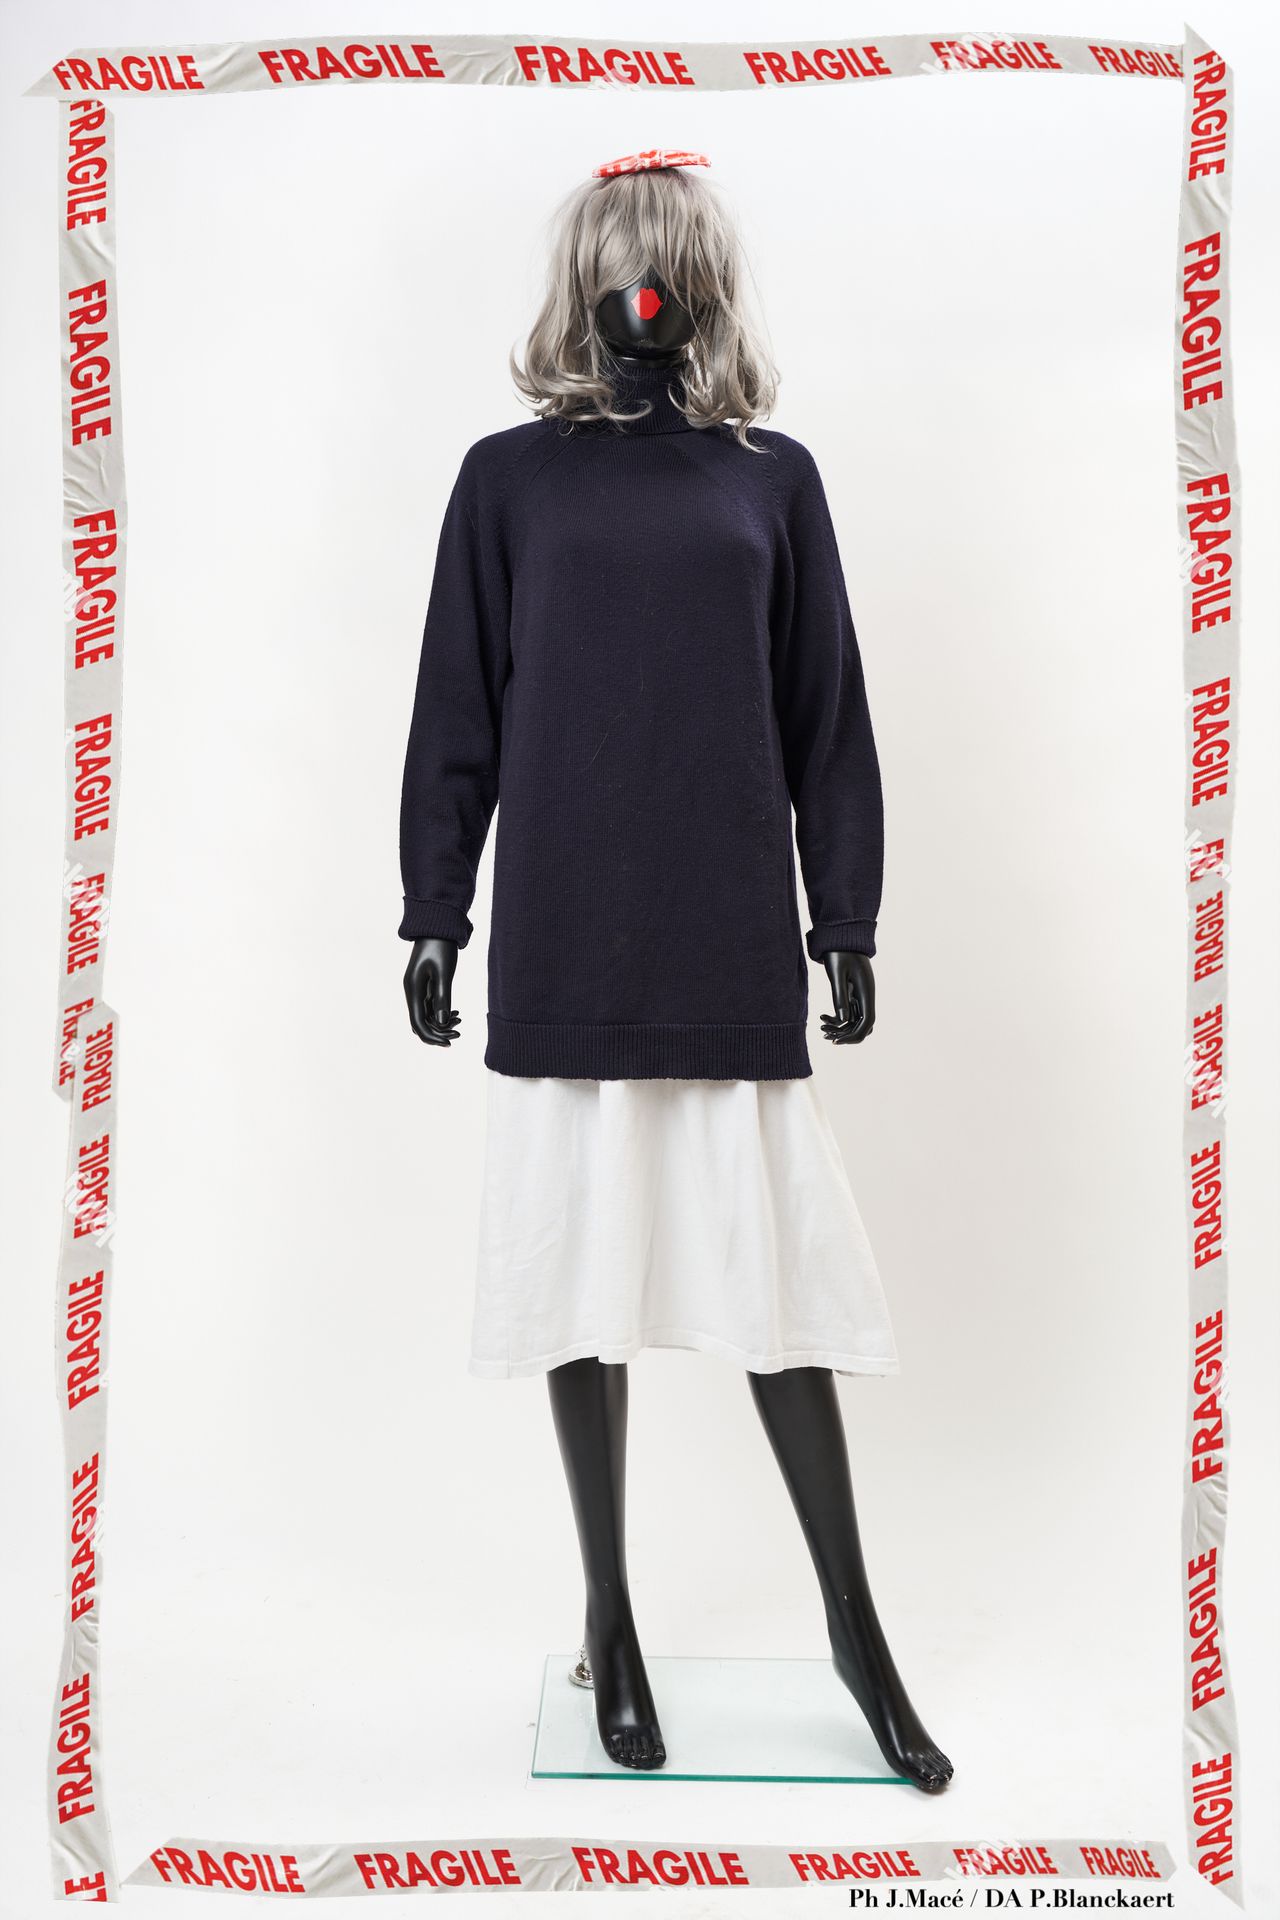 MAISON MARTIN MARGIELA Ponticello

dolcevita in maglia di lana navy

T L it

Pic&hellip;